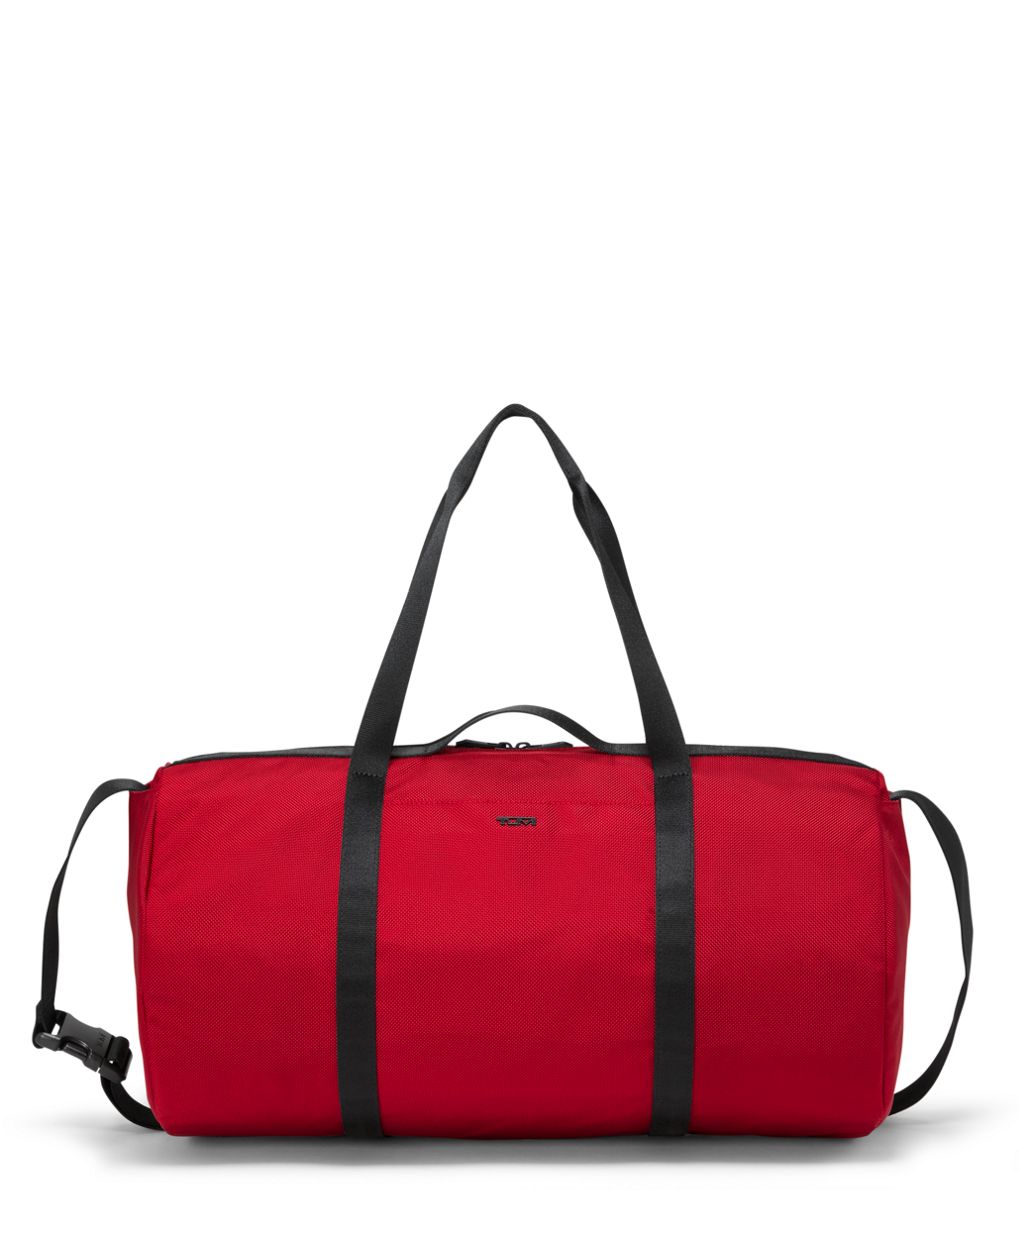 Simple Embroidered Adjustable Wide Shoulder Strap, Portable Shoulder Bag  Strap, Versatile Bag Strap